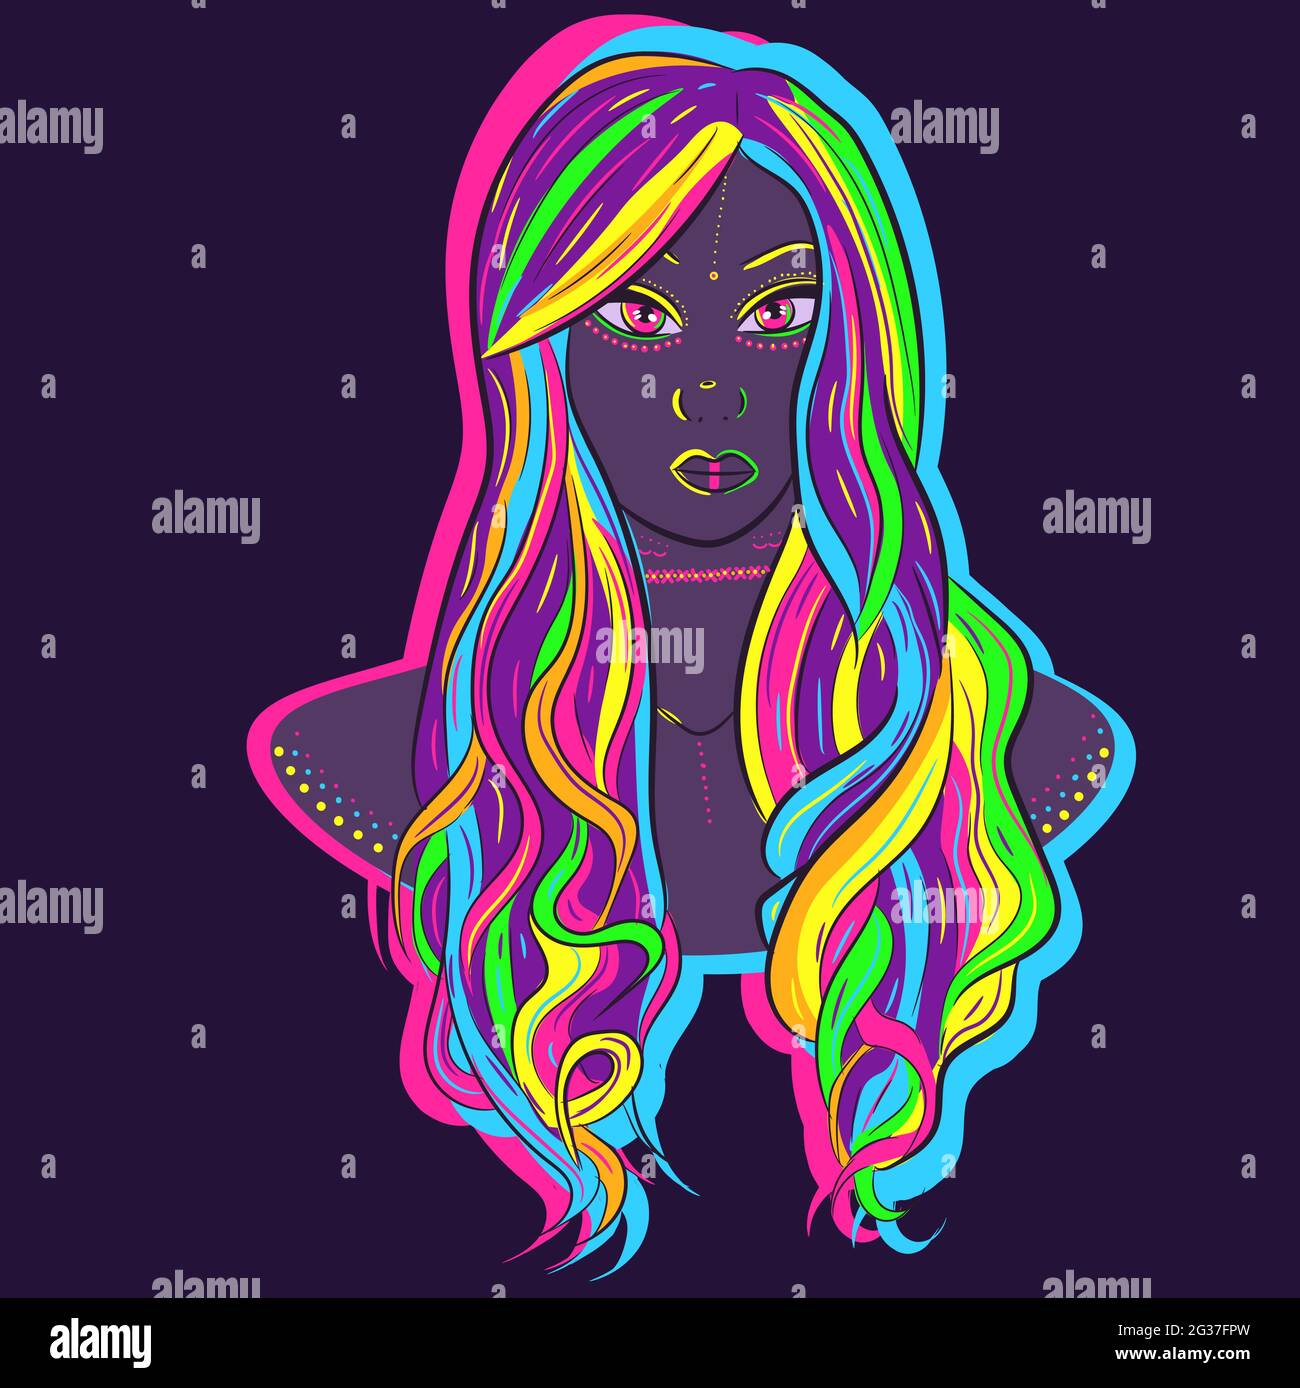 Illustrazione al neon di una donna al neon con capelli colorati. Arte vettoriale di un manichino che indossa una parrucca ricurly arcobaleno. Illustrazione Vettoriale